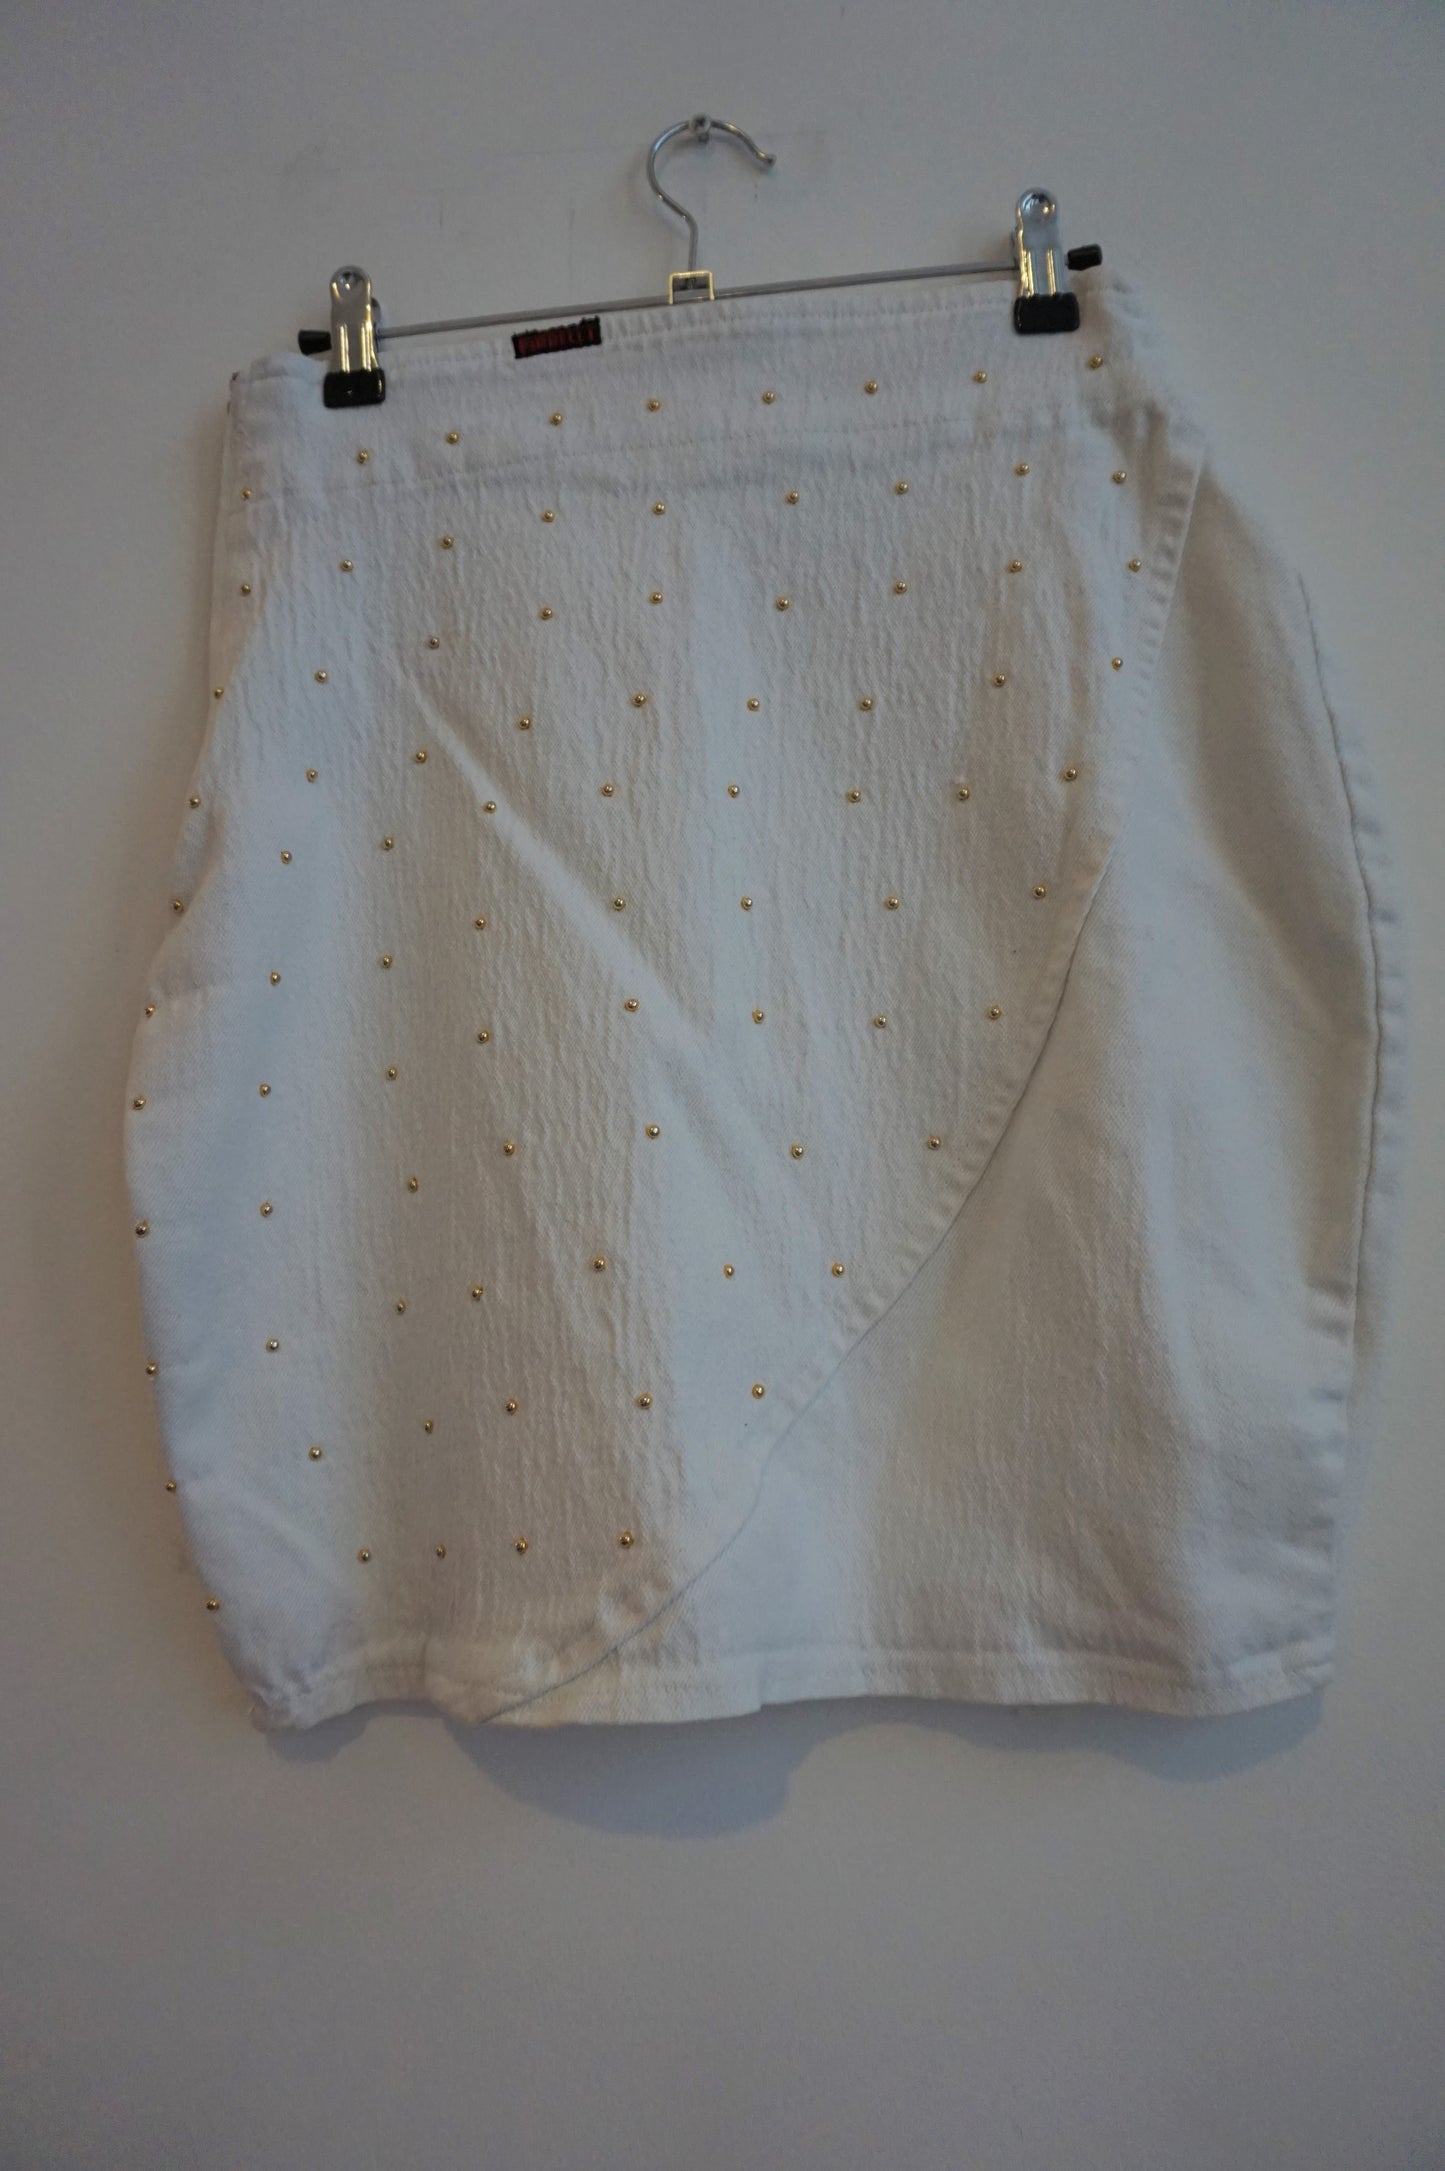 White denim mini skirt